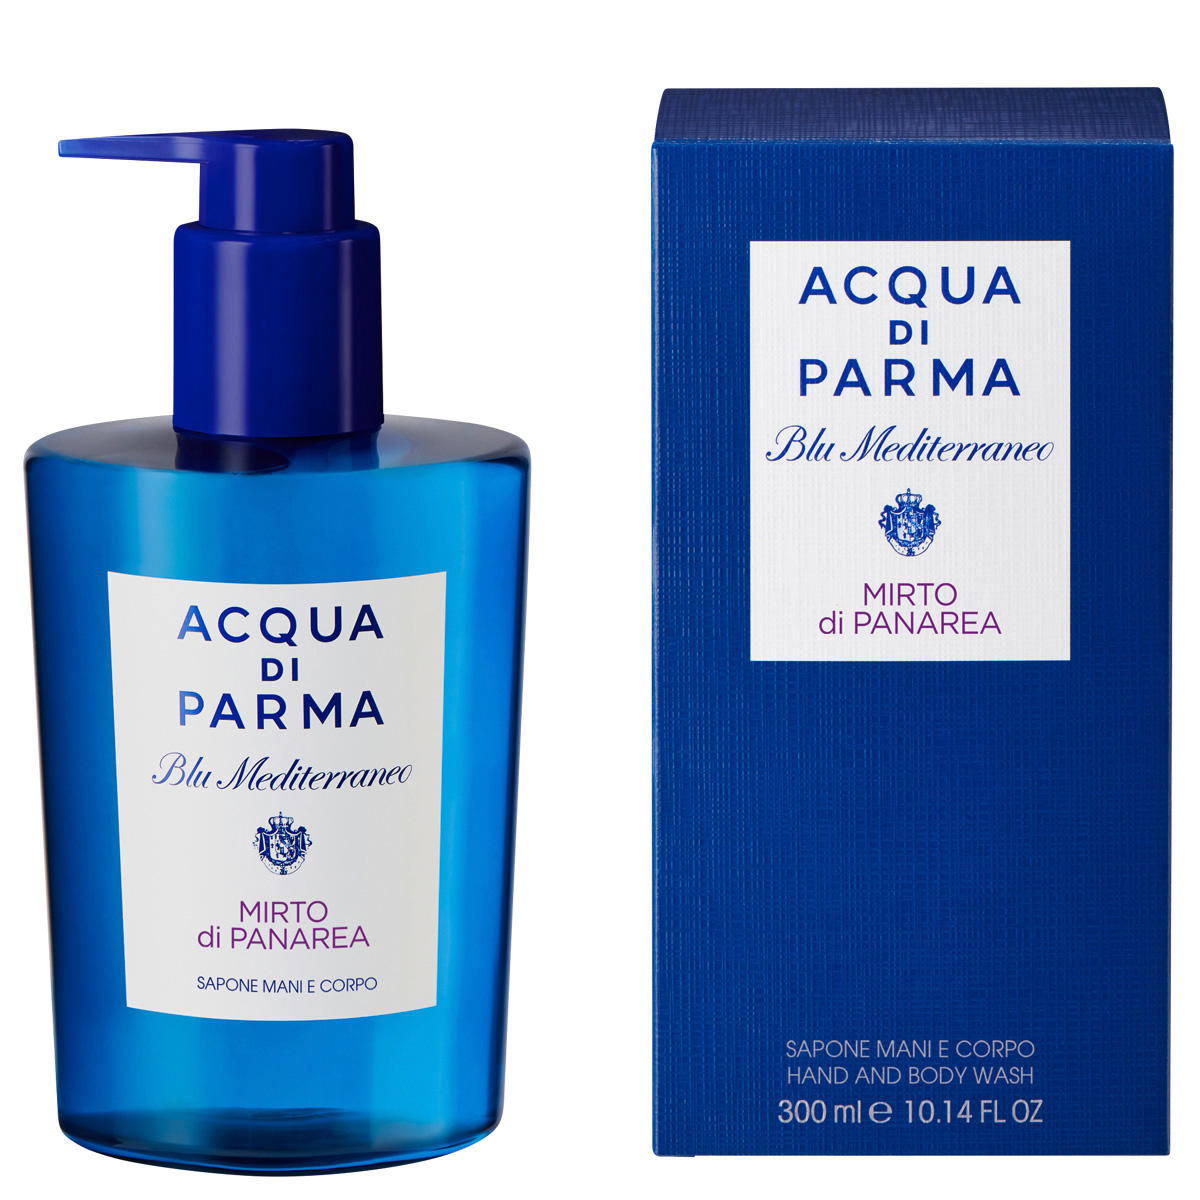 Acqua di Parma Blu Mediterraneo Mirto di Panarea Hand and Body Wash 300 ml - 2